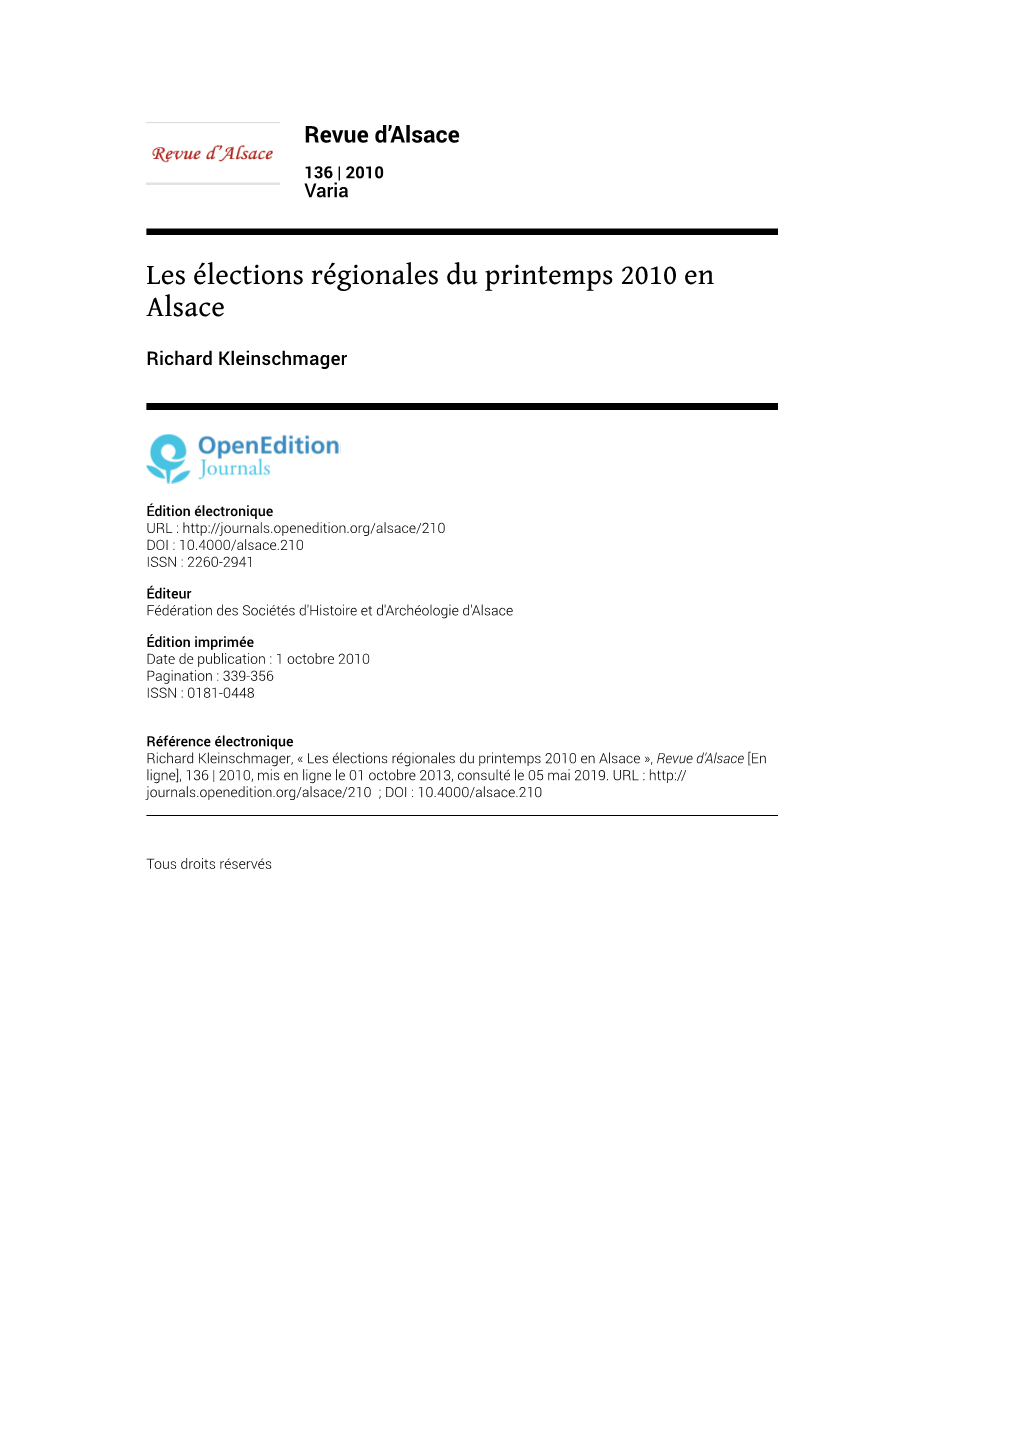 Les Élections Régionales Du Printemps 2010 En Alsace